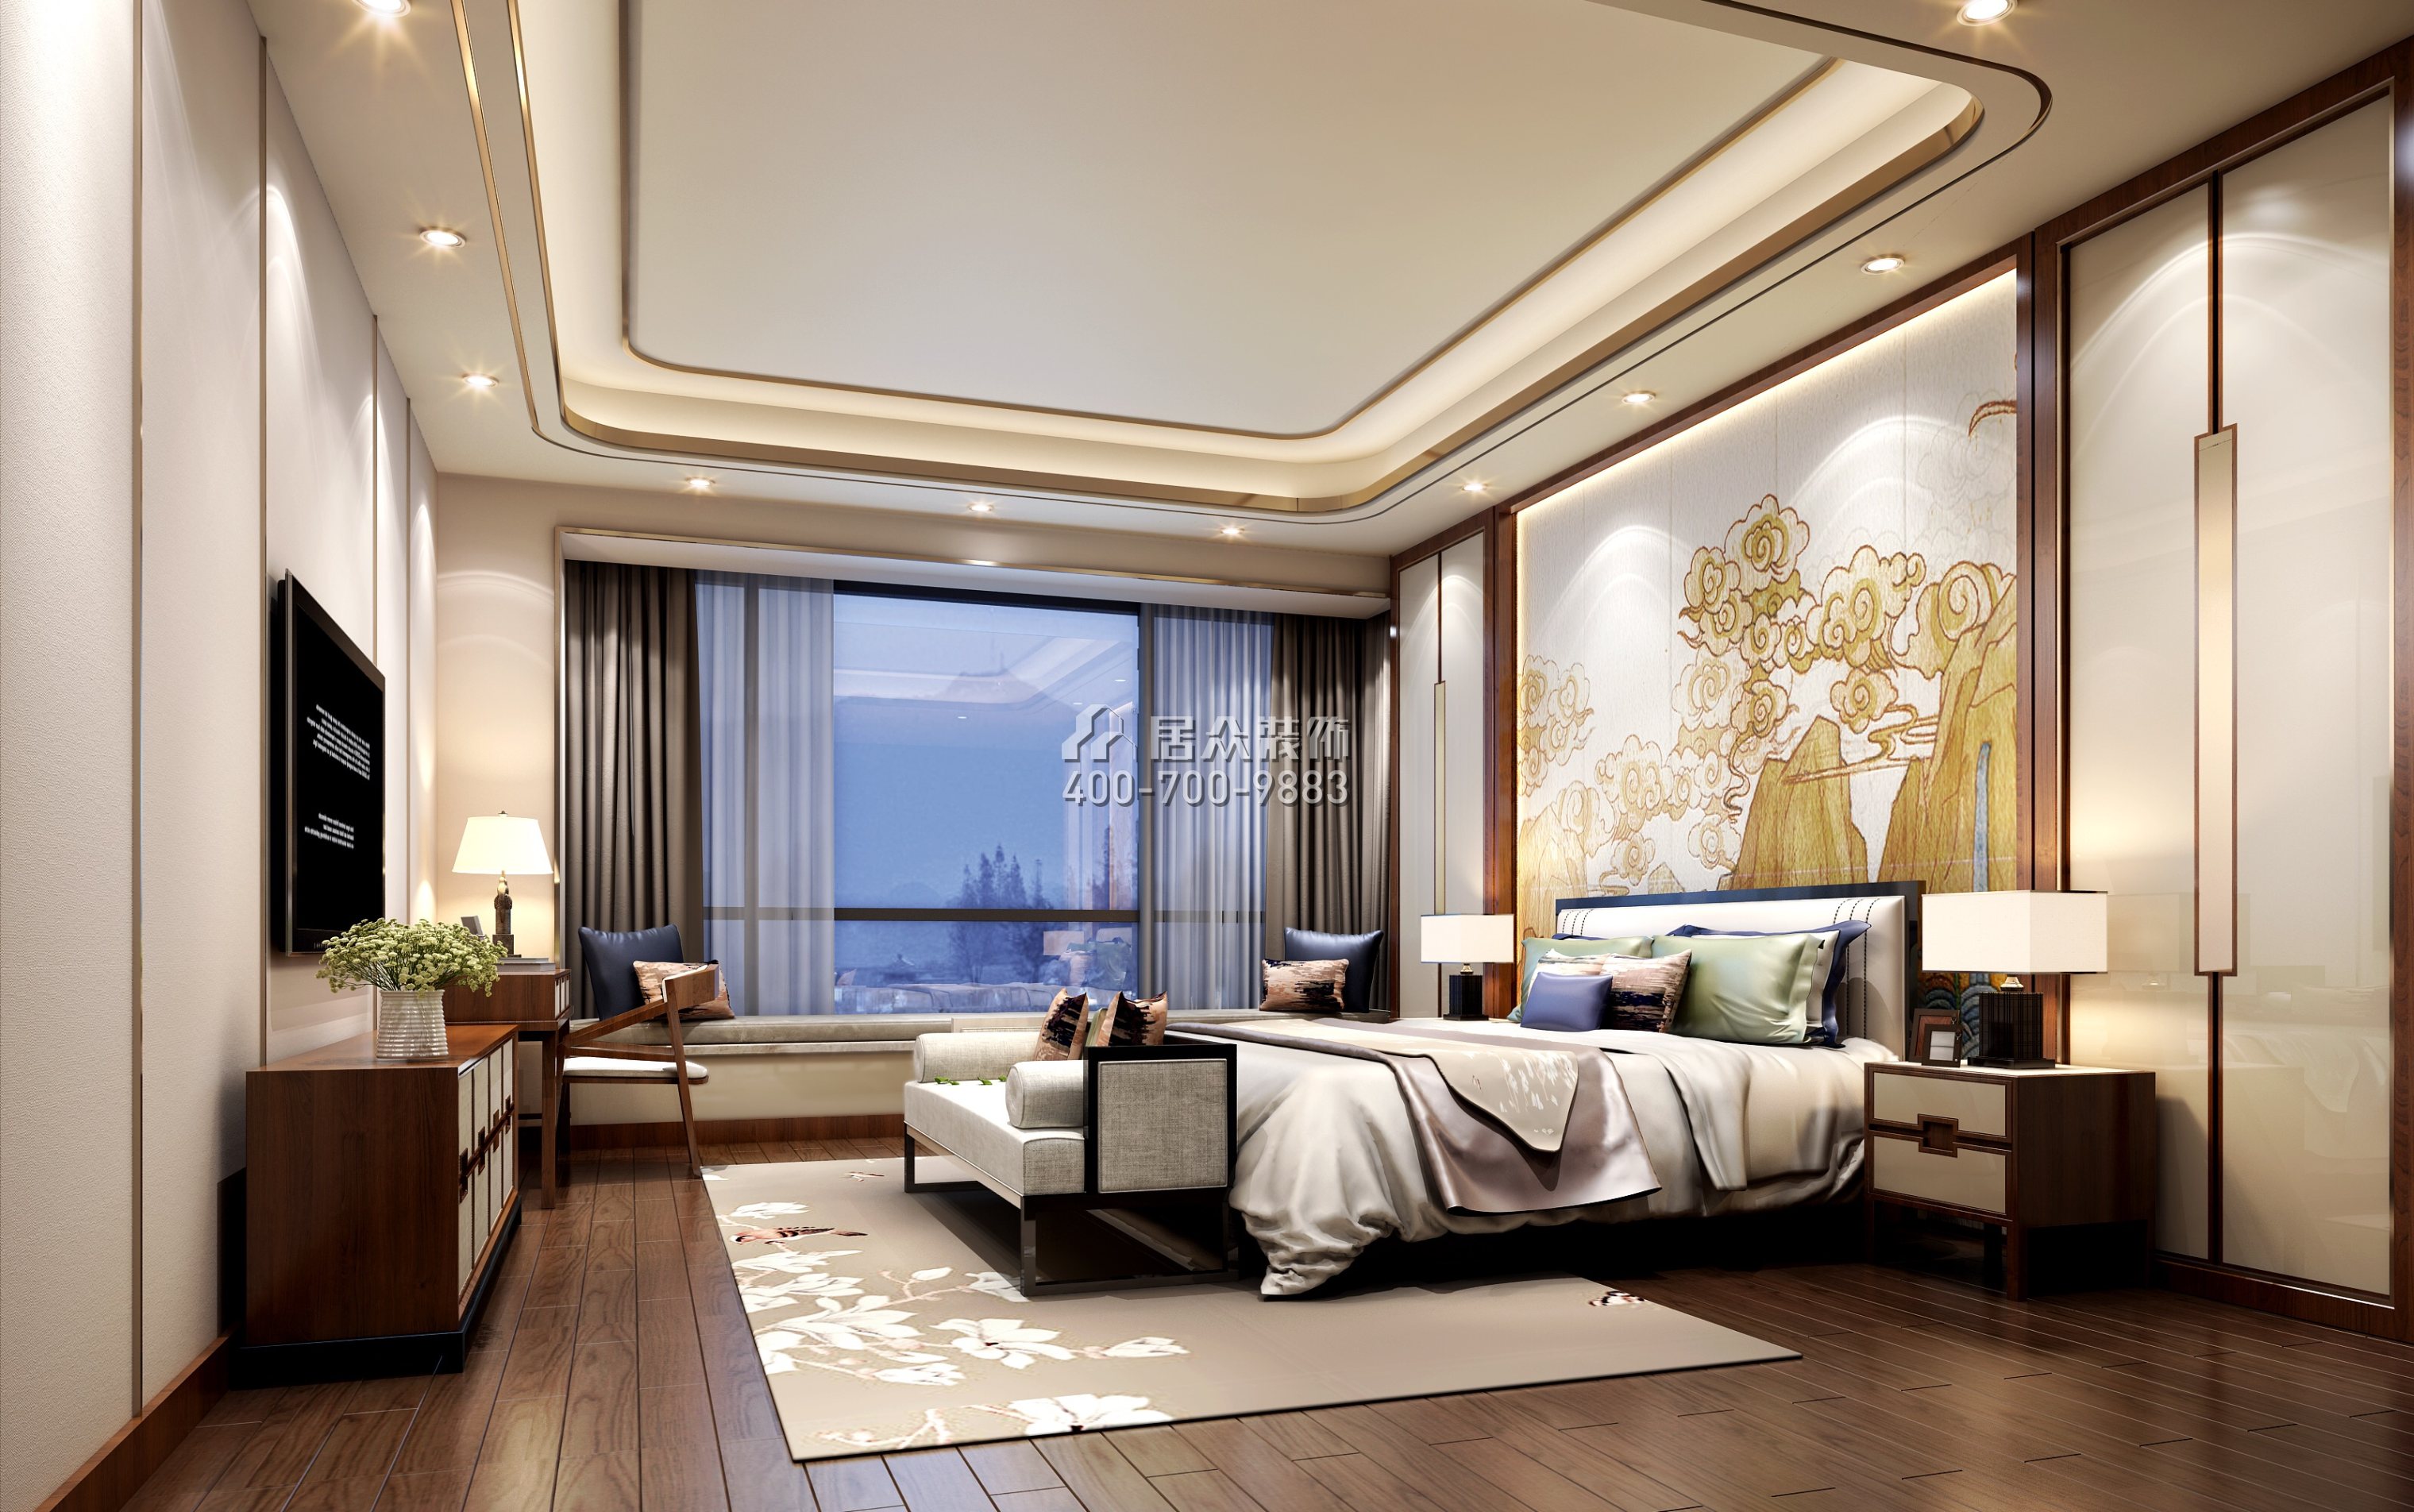 松山湖錦繡山河340平方米中式風格平層戶型臥室裝修效果圖